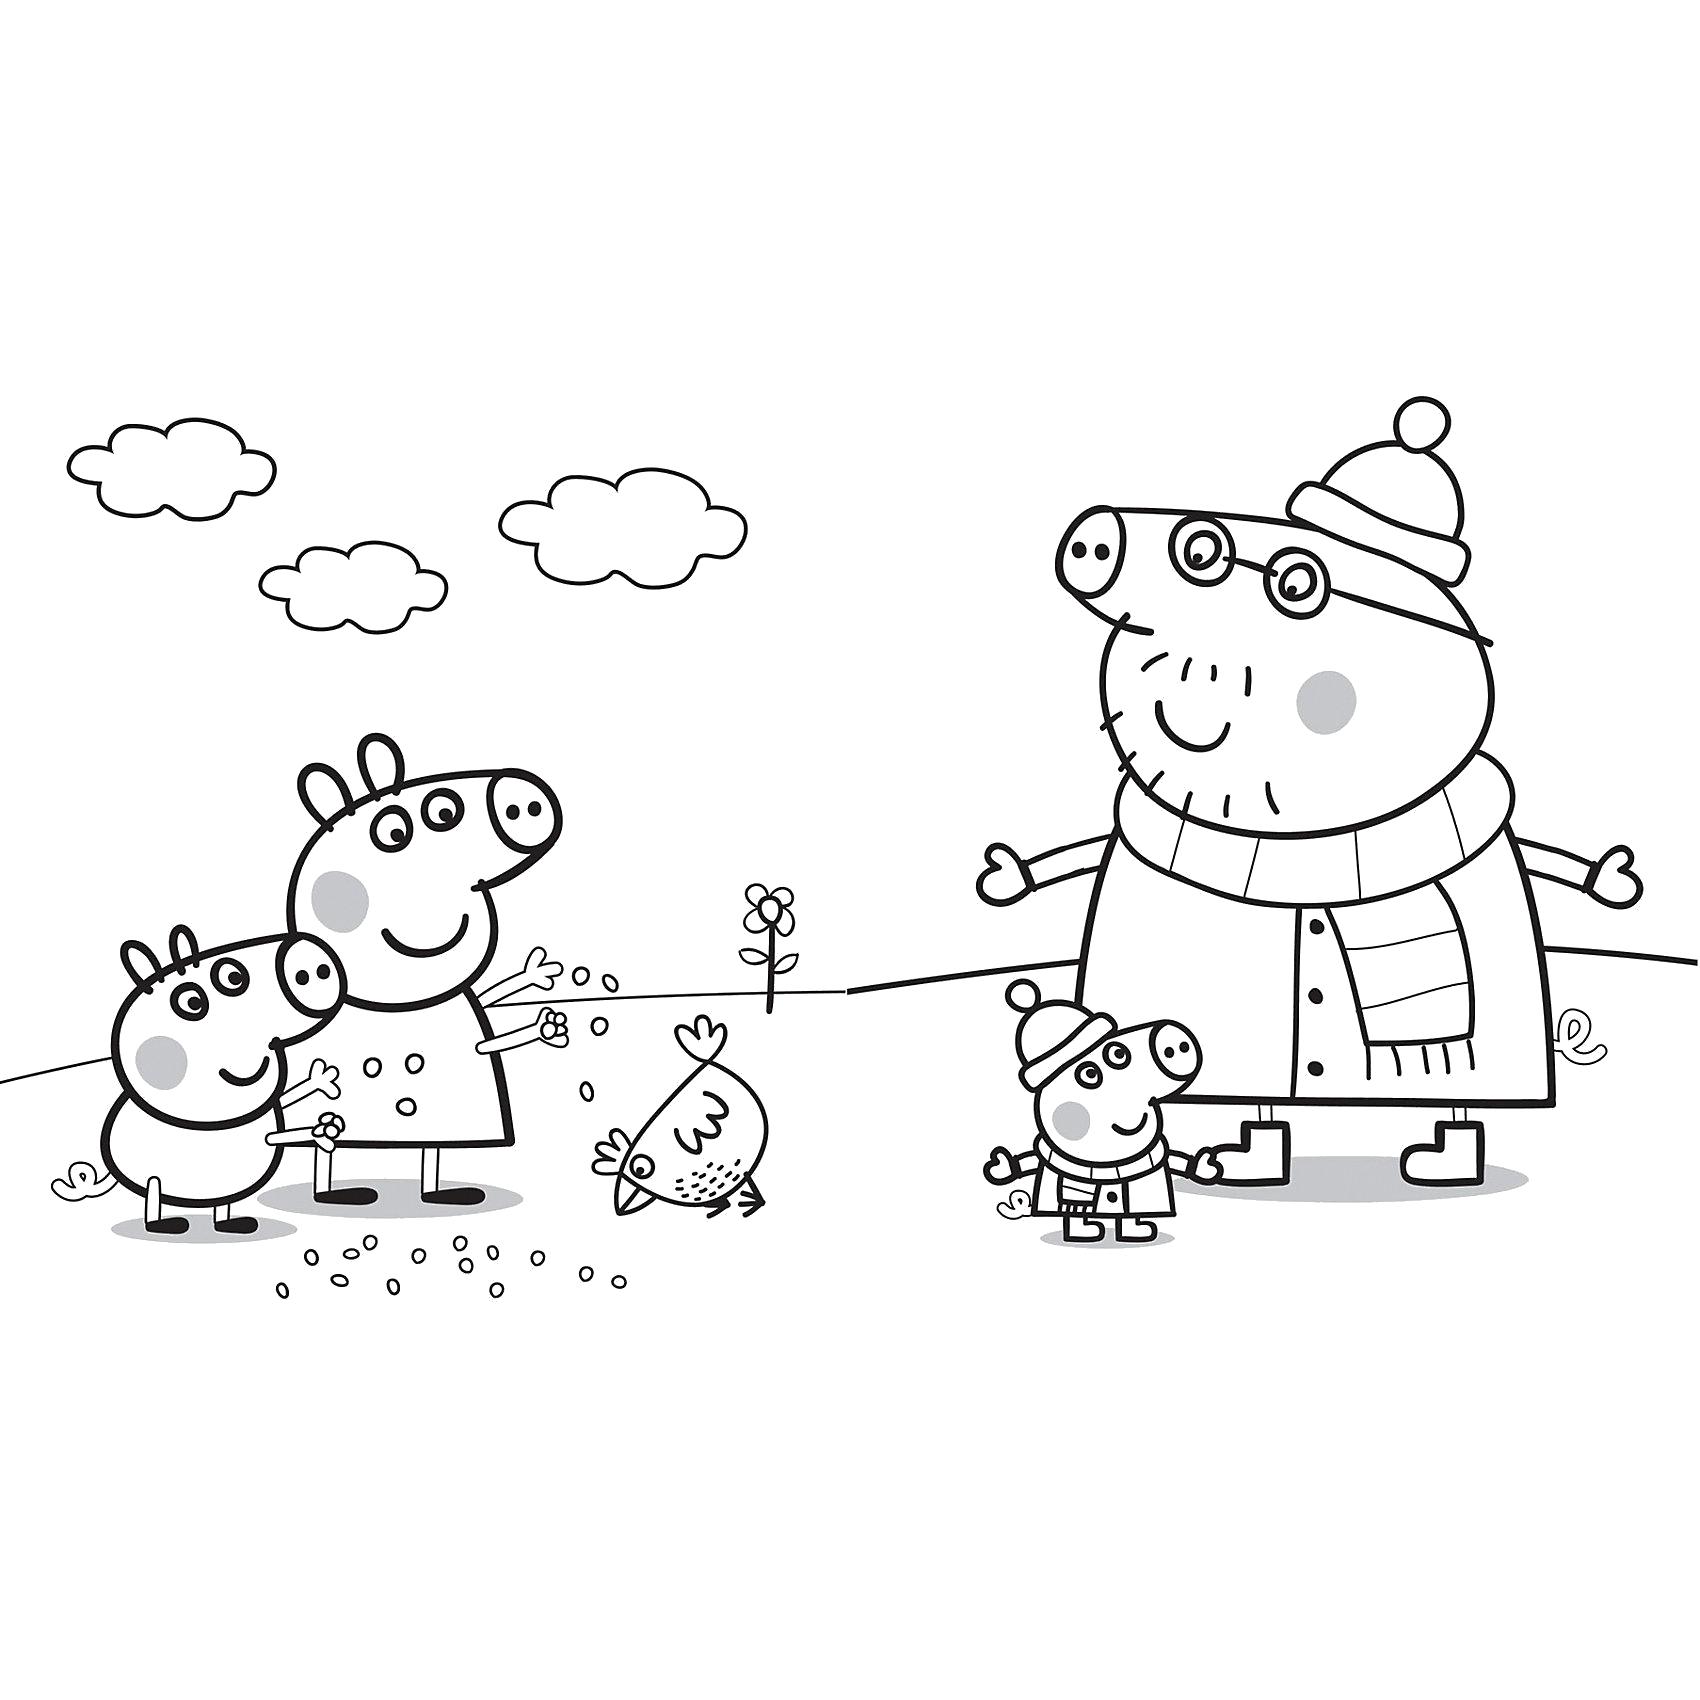 Познавательные и забавные раскраски для детей про свинку Пеппу  Свинка Пеппа и ее семья гуляют